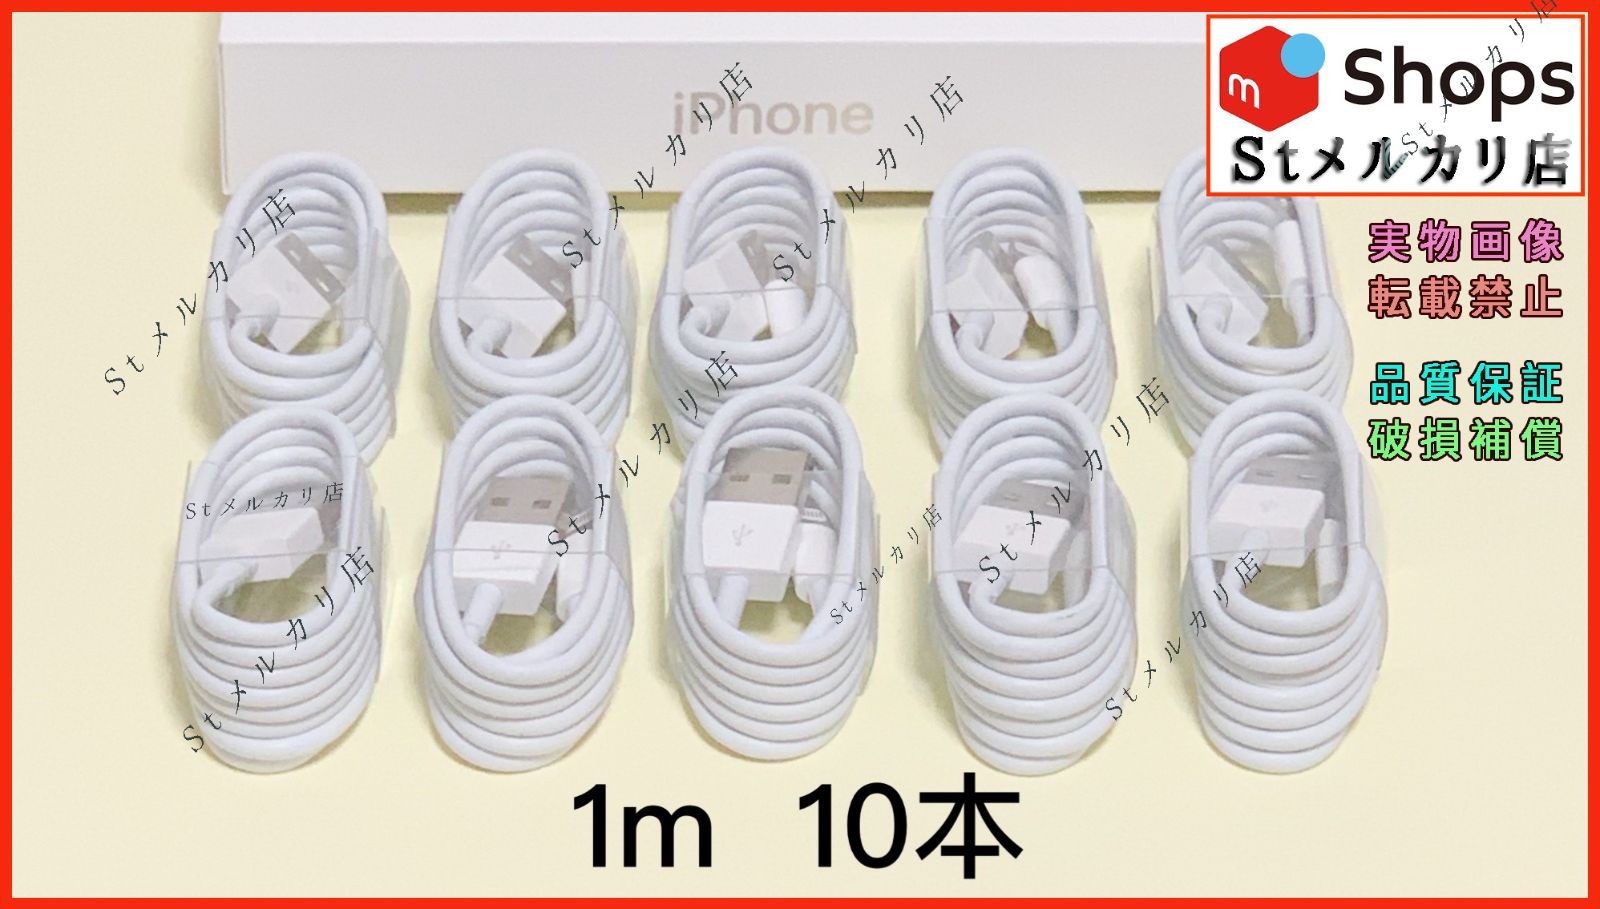 10本 1M iPhone ライトニングケーブル 充電器 アイフォン USBケーブル